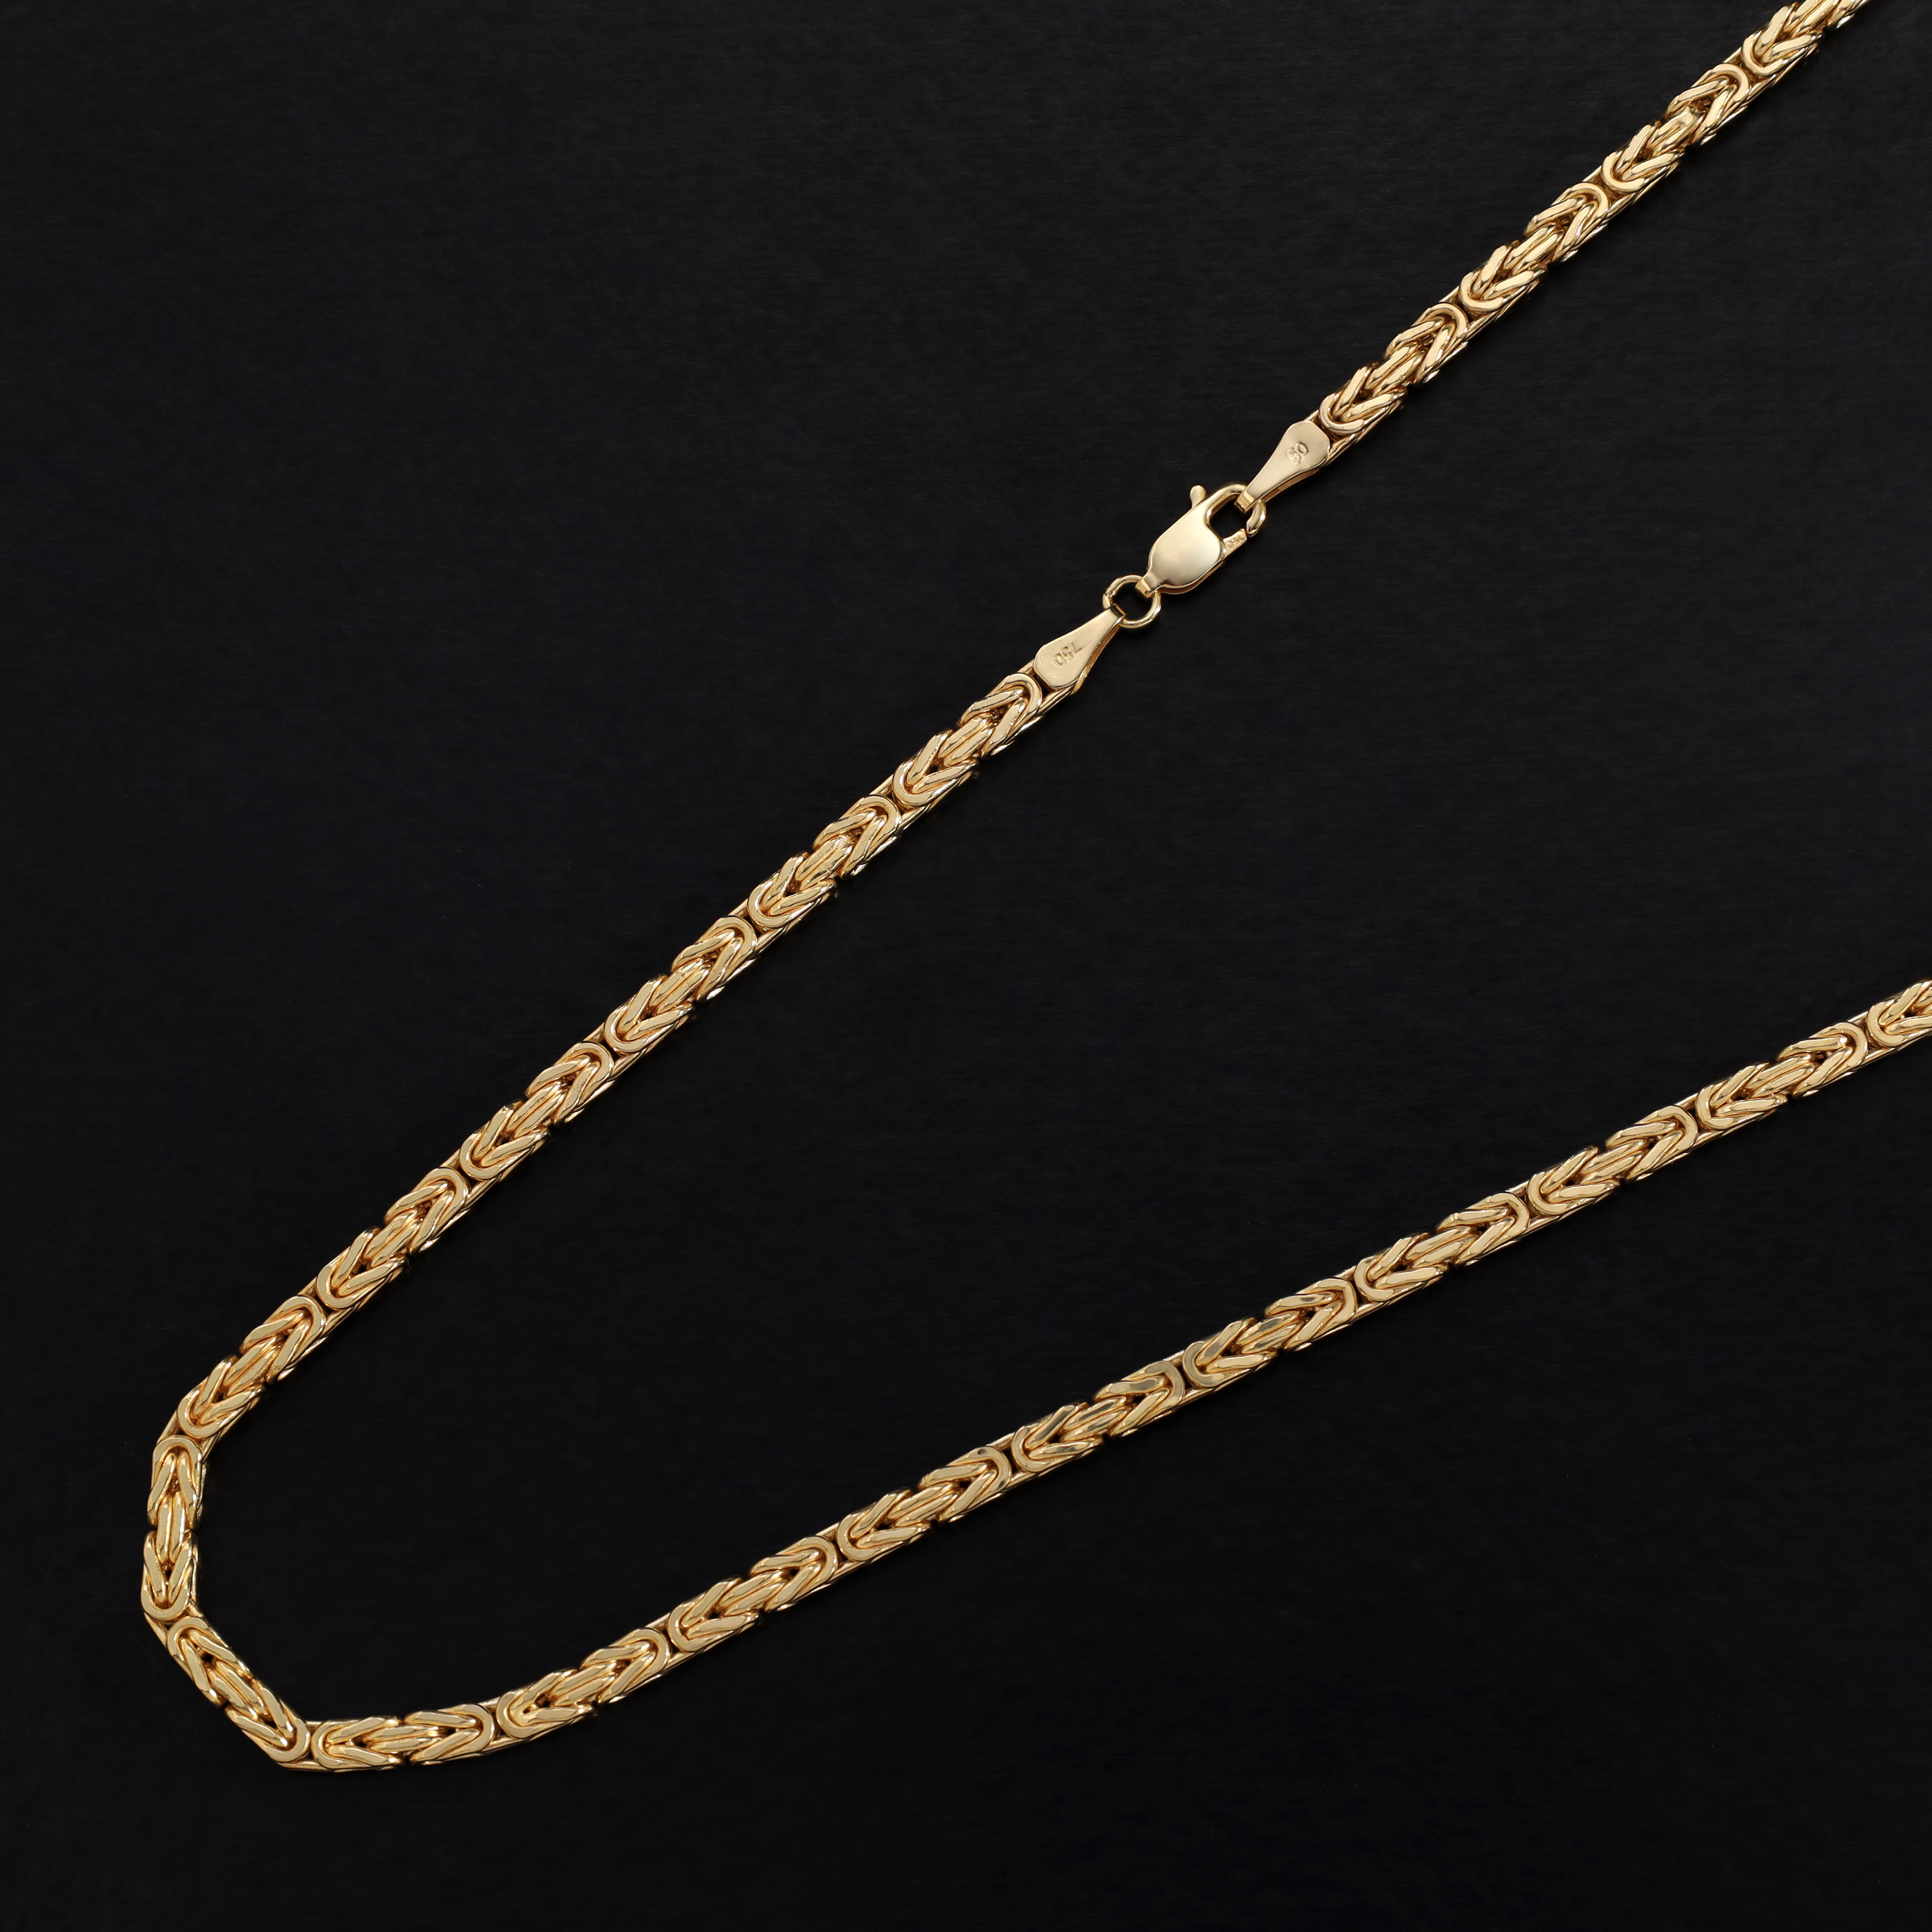 18K 750 Gold Königskette 3mm breit 65cm lang - Taipan Schmuck